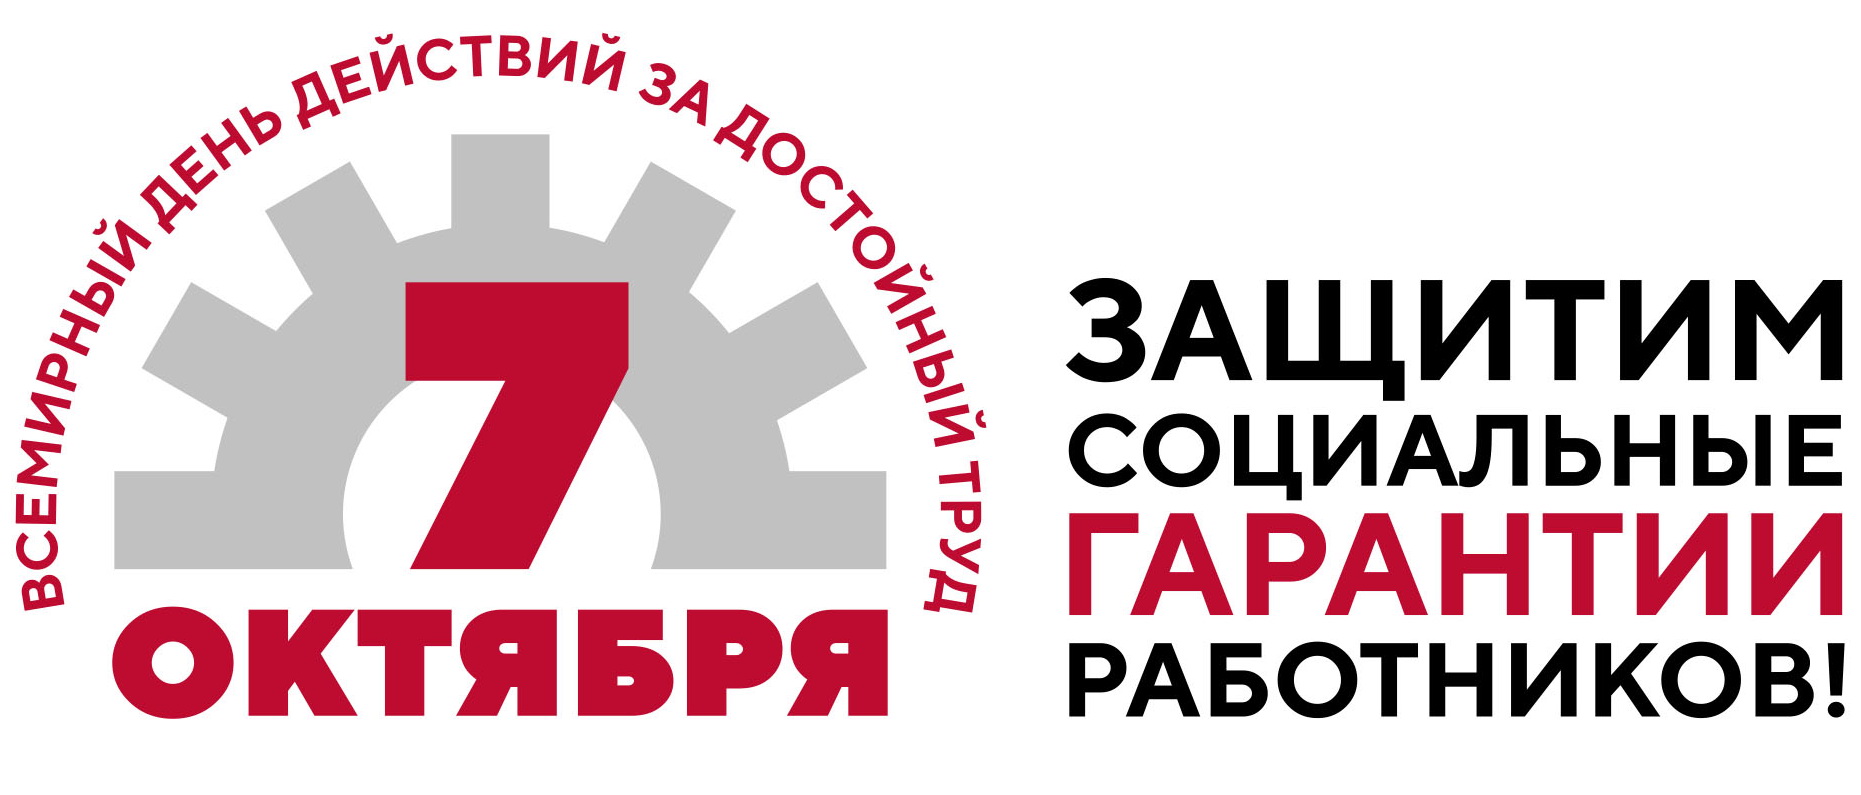 Алтайский крайсовпроф примет участие во всероссийской акции профсоюзов в рамках Всемирного дня действий «За достойный труд»